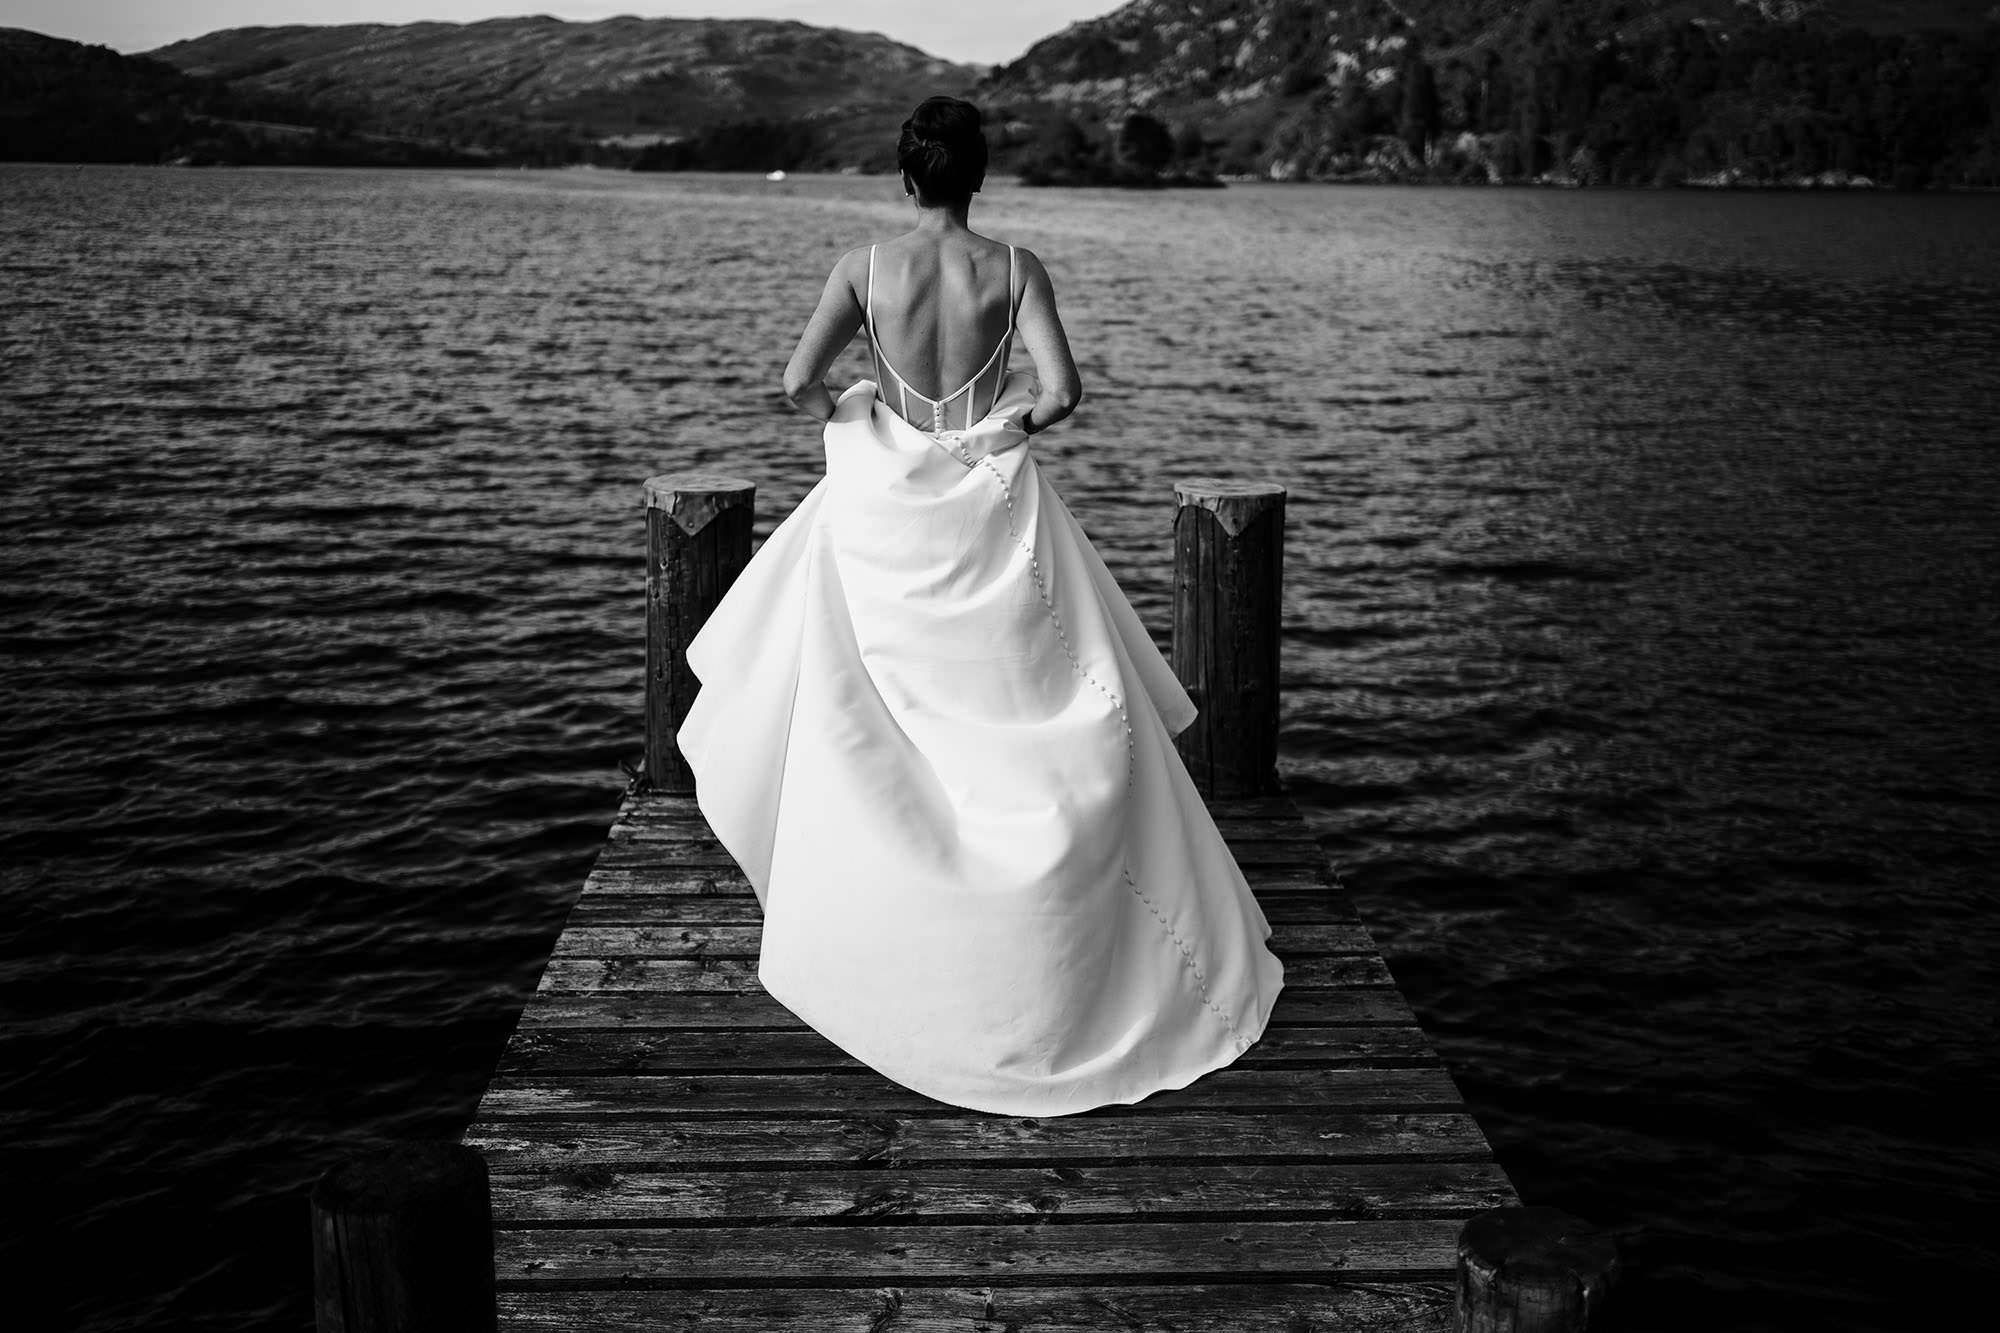 Bride in dress walks along dock in Lake District